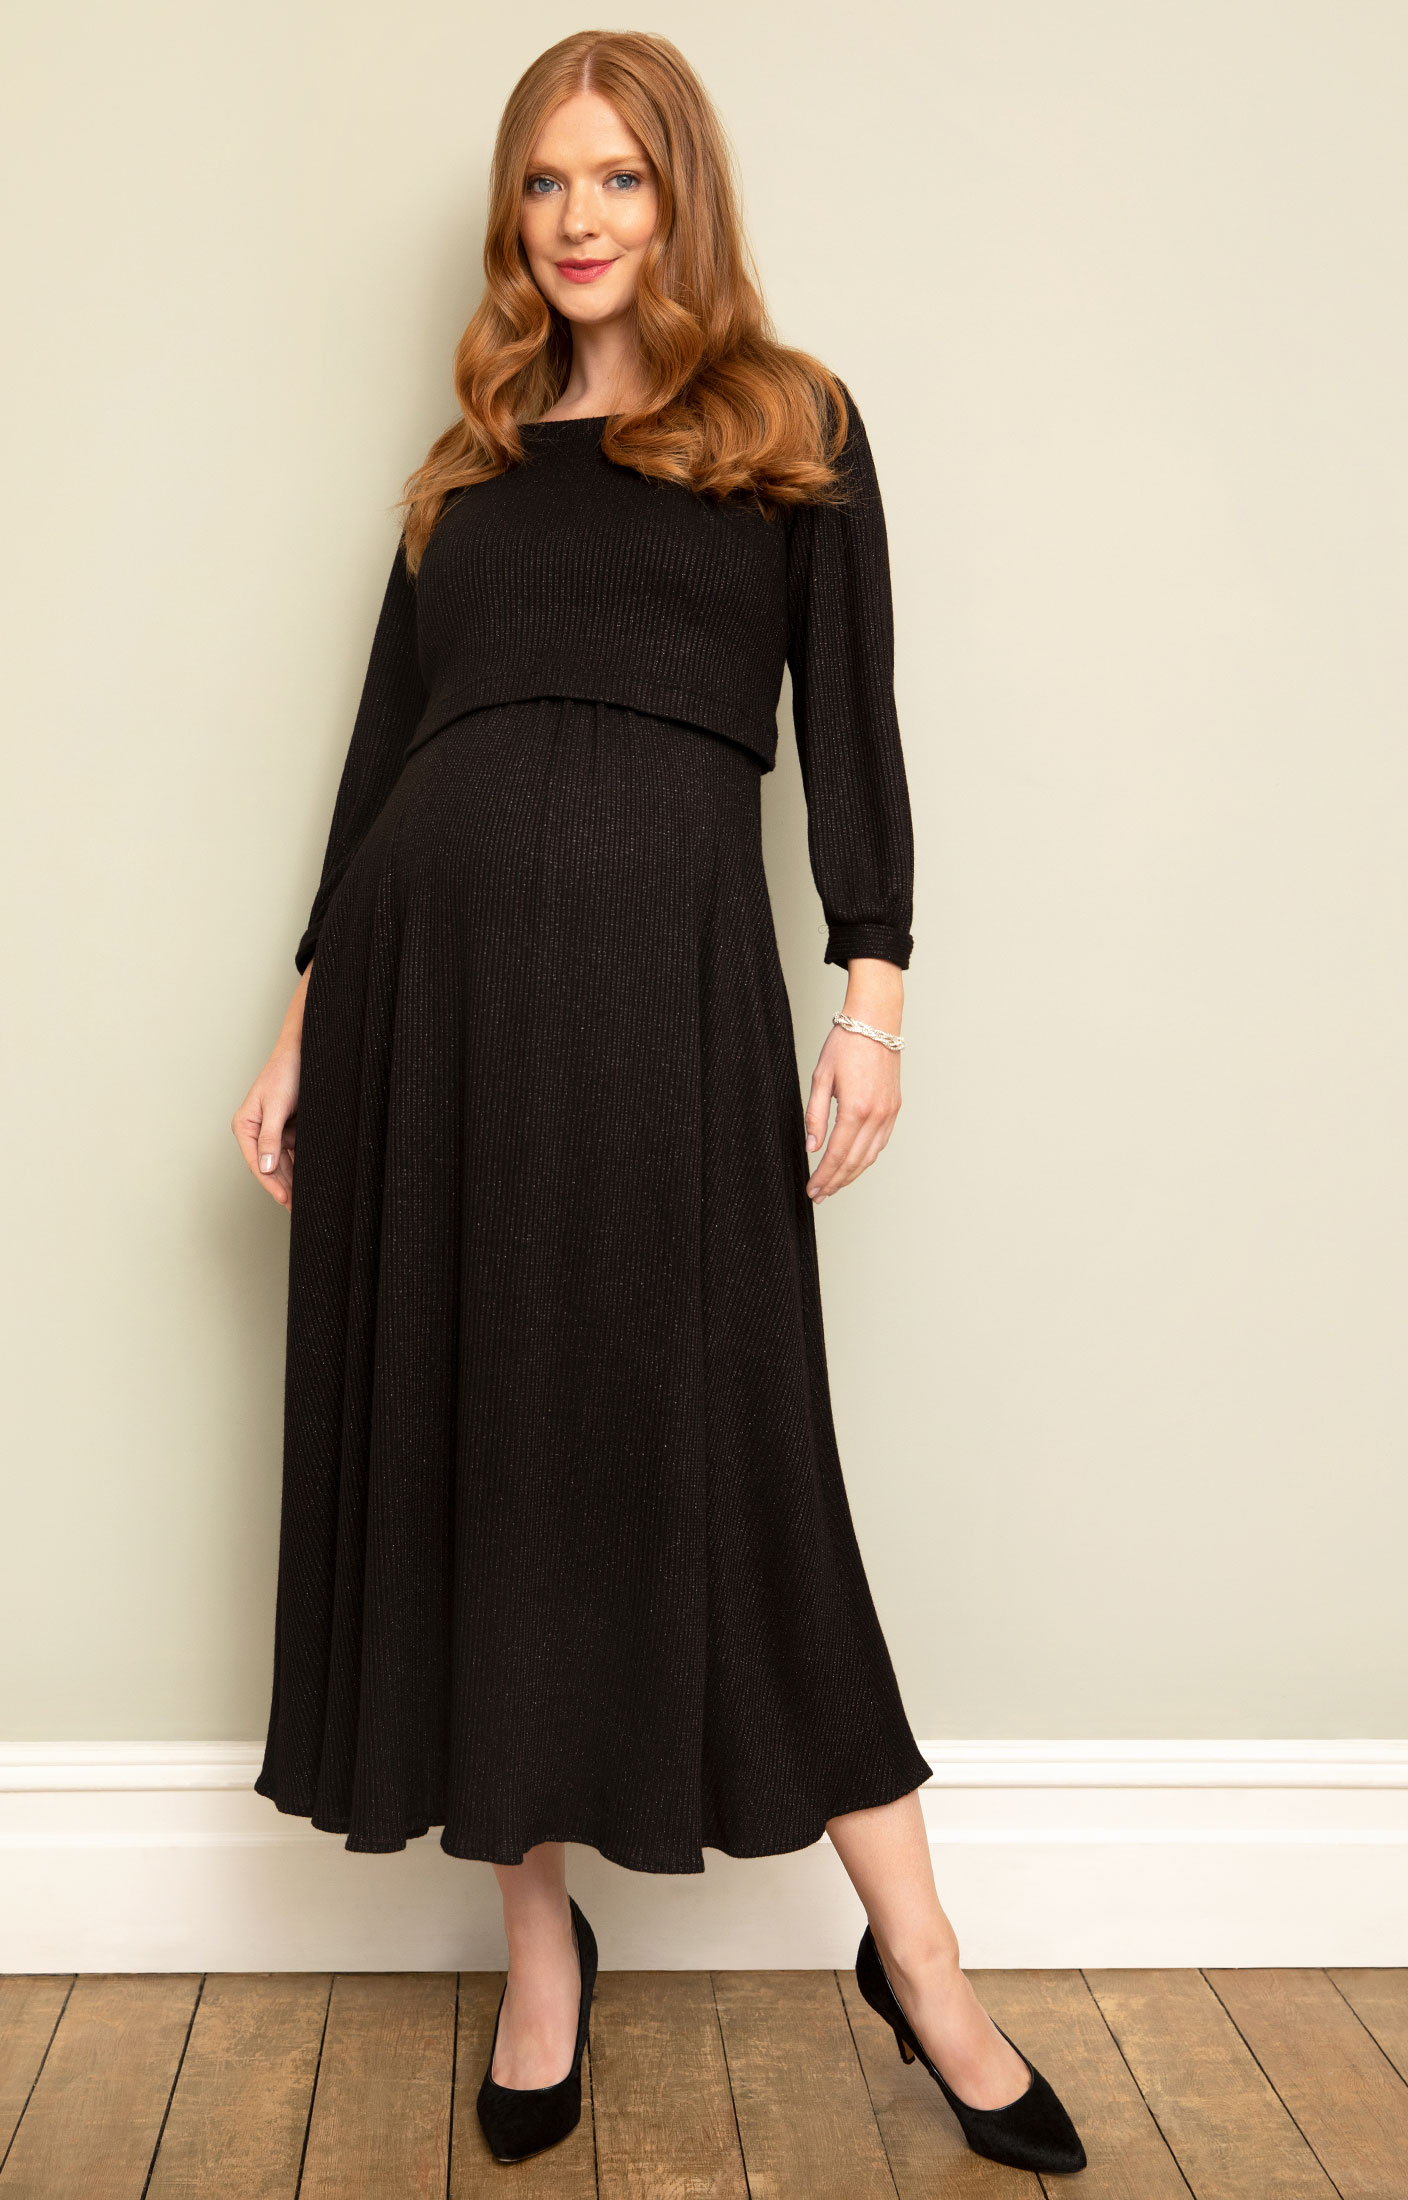 Ribbed Knit Maternity Full Sleeve Maxi Dress – Black